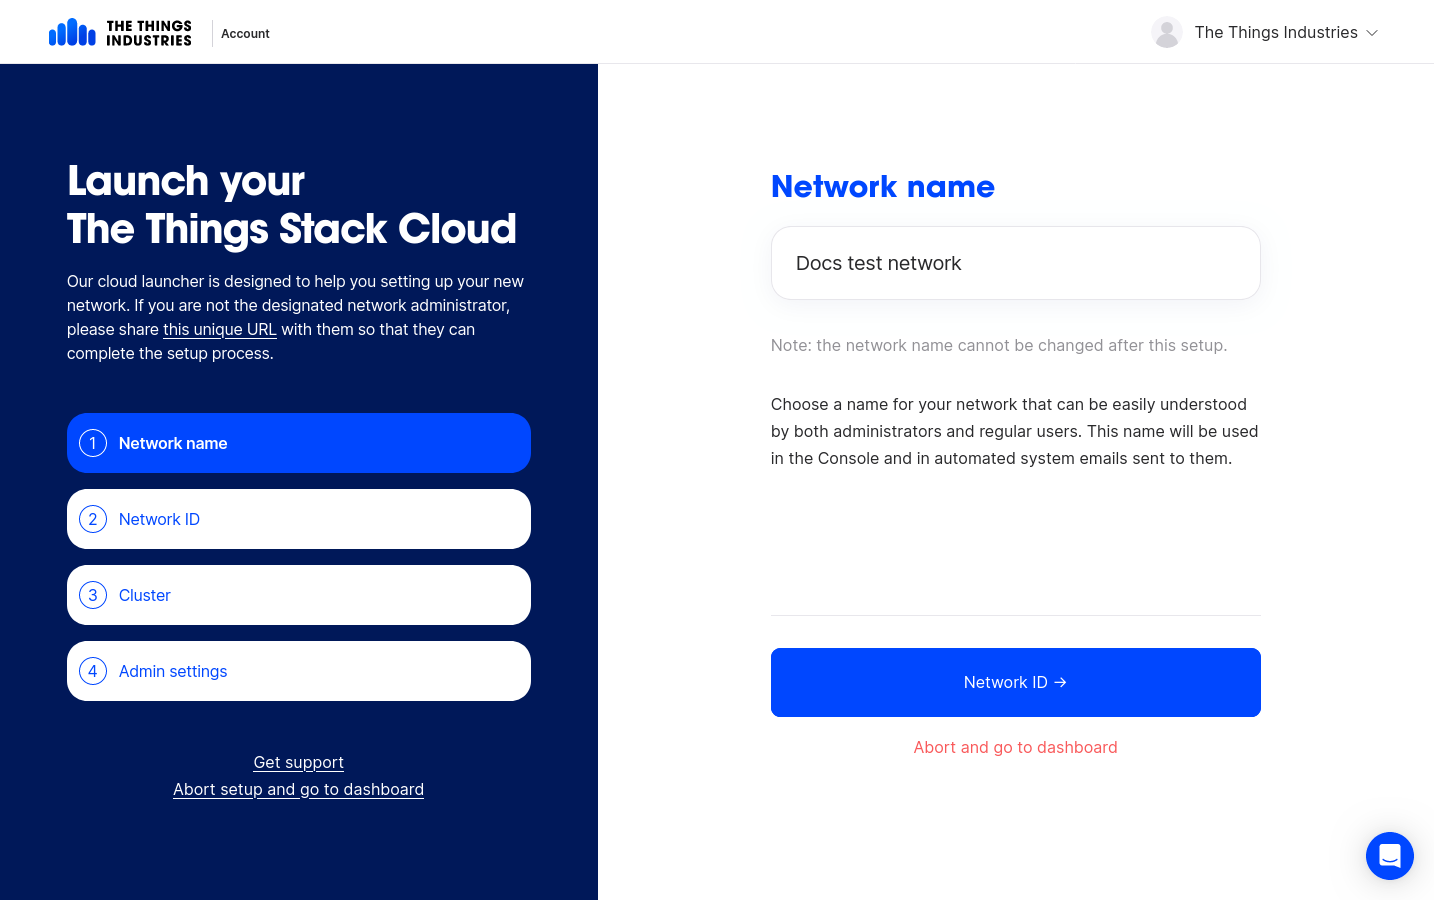 Enter network name